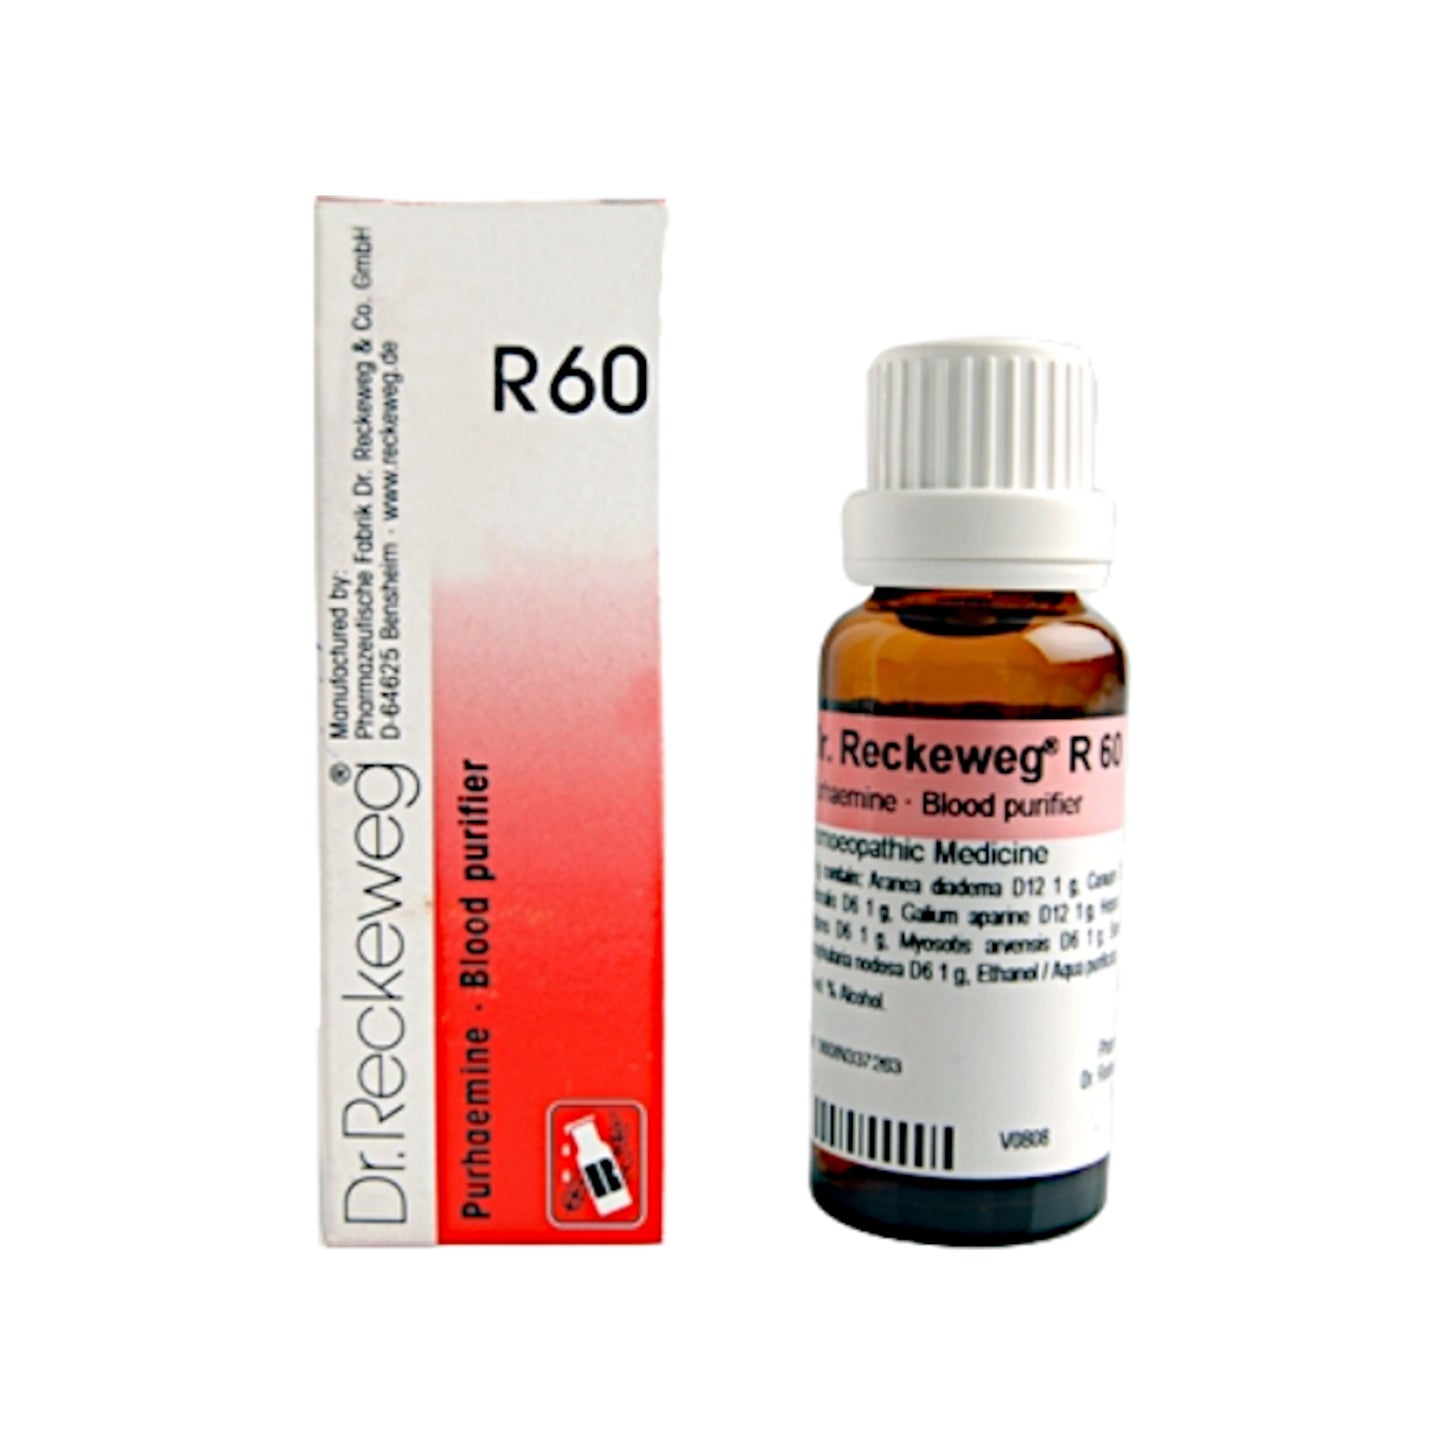 Dr. Reckeweg R60 - Purhaemine Blood Purifier 22 ml